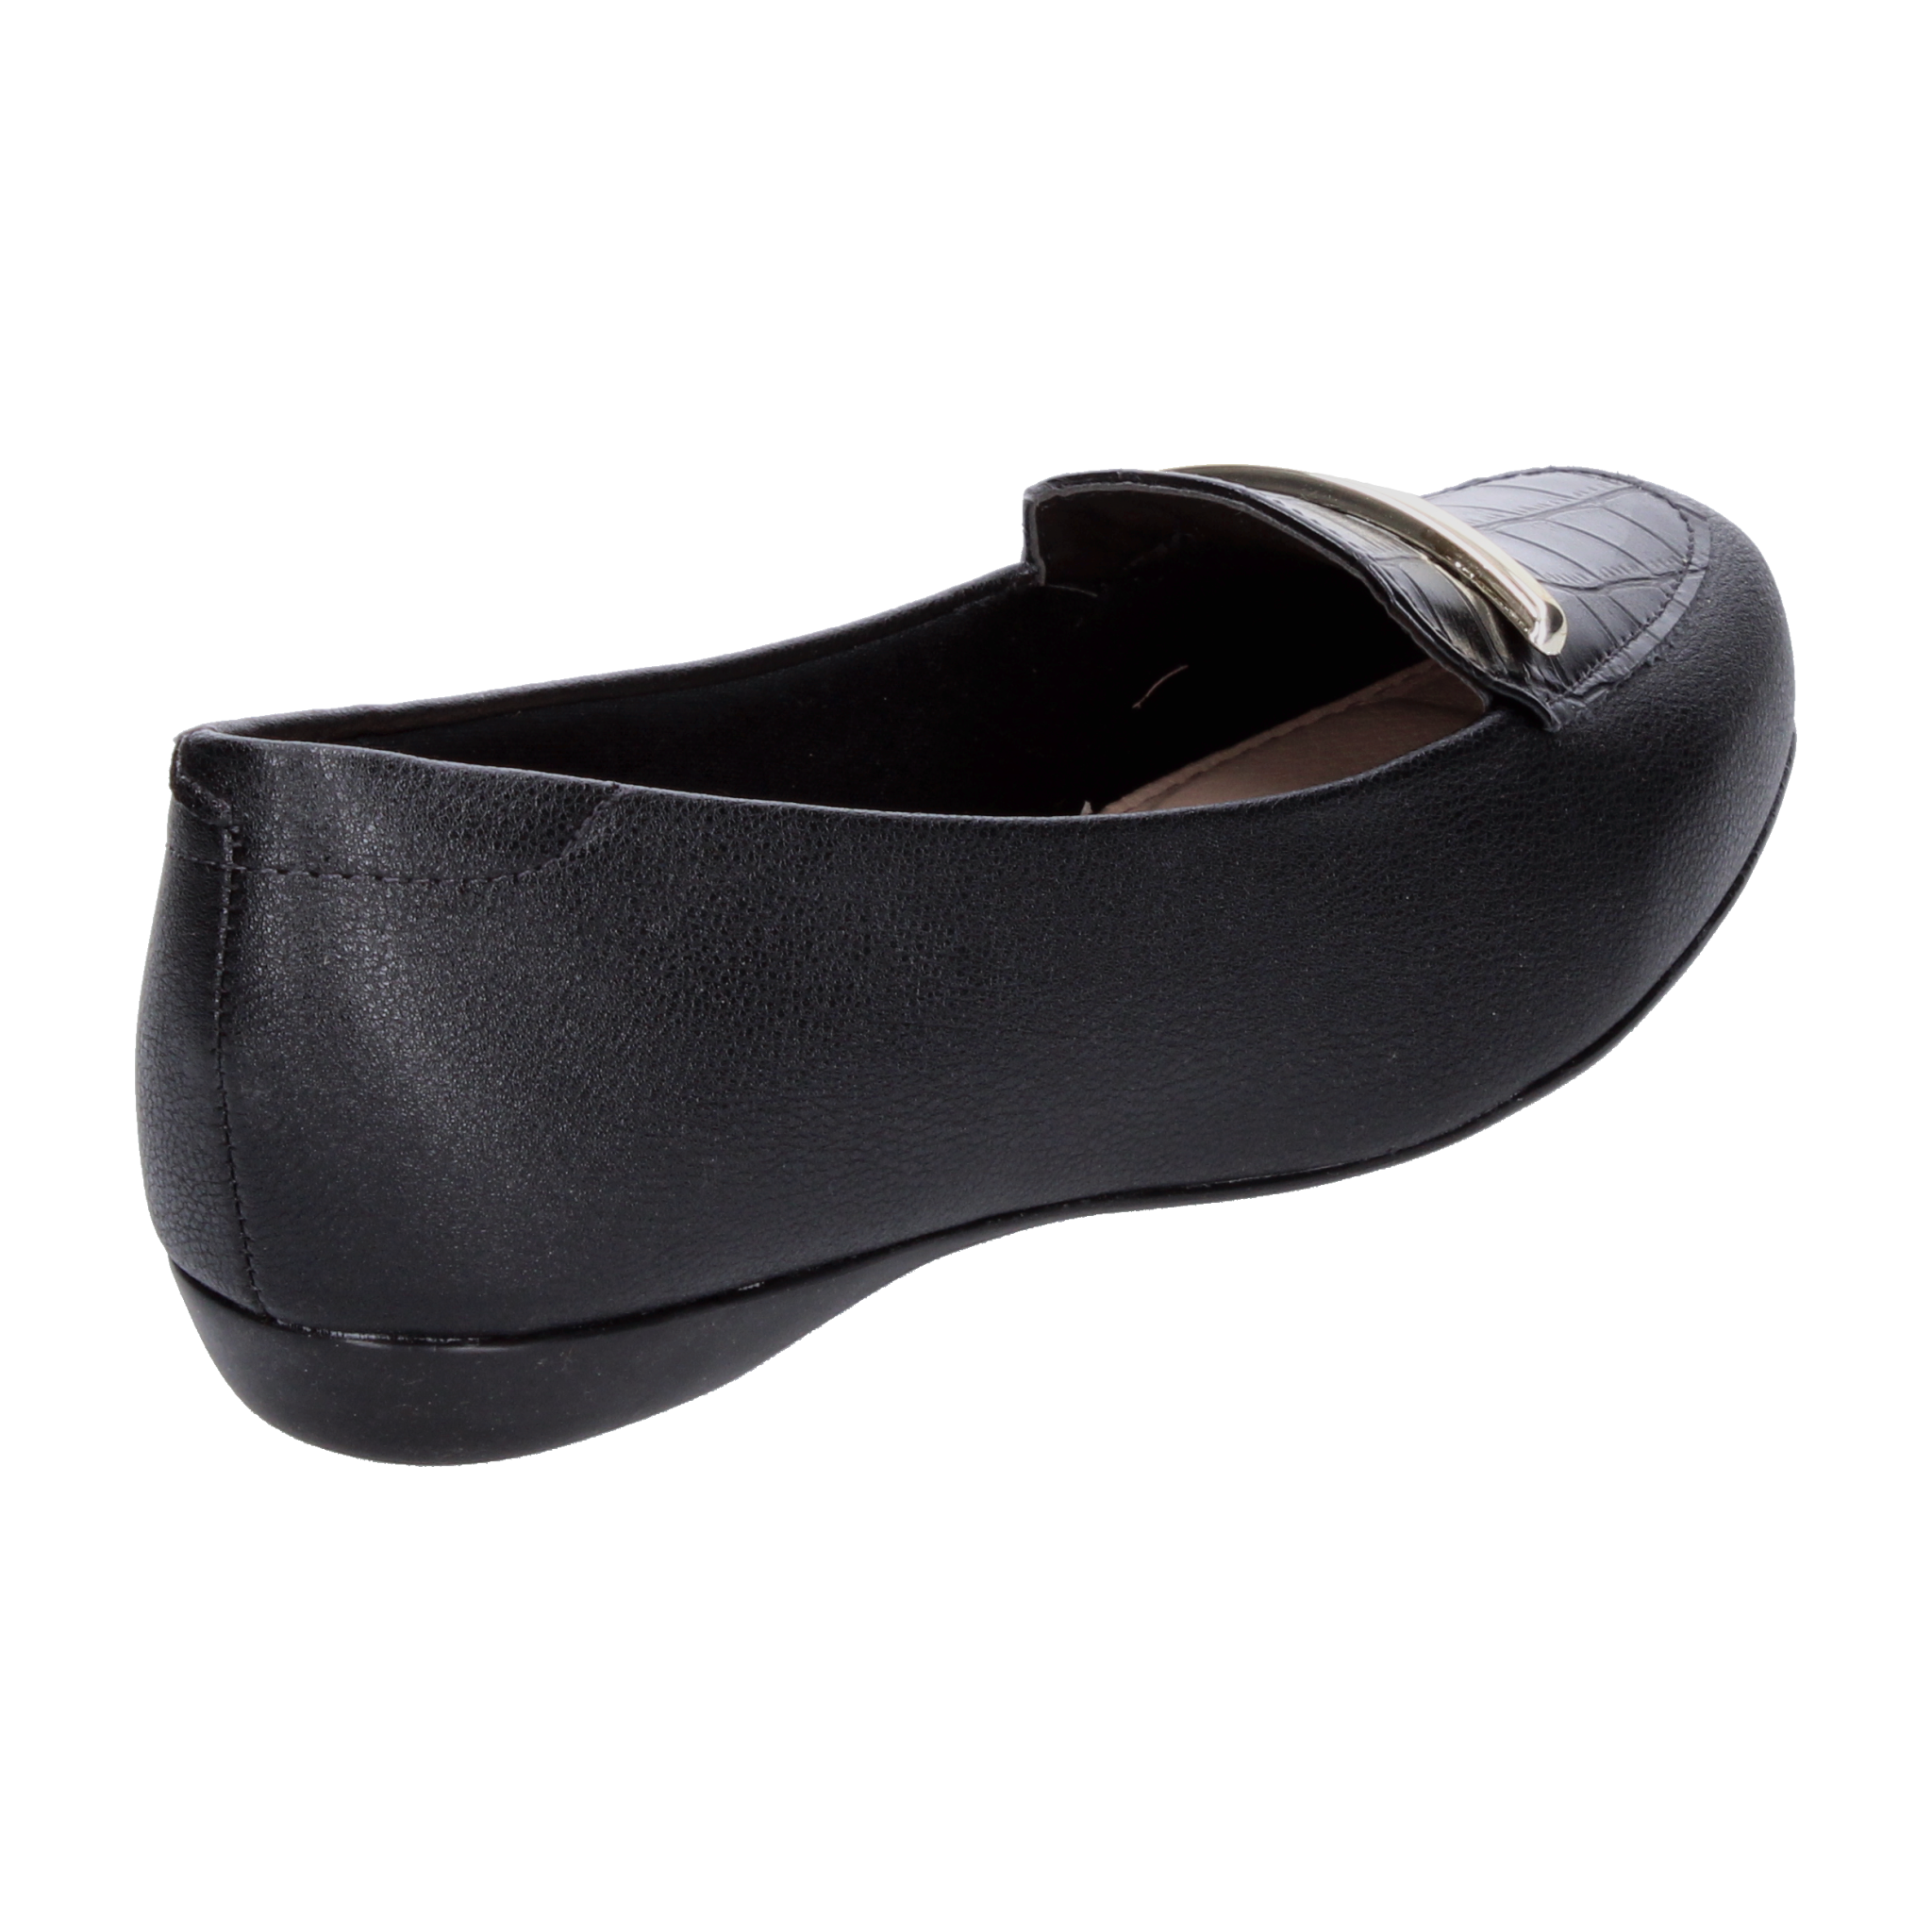 Zapato Confort Modare Negro para Mujer [MOD30] - Zapaterias Torreon